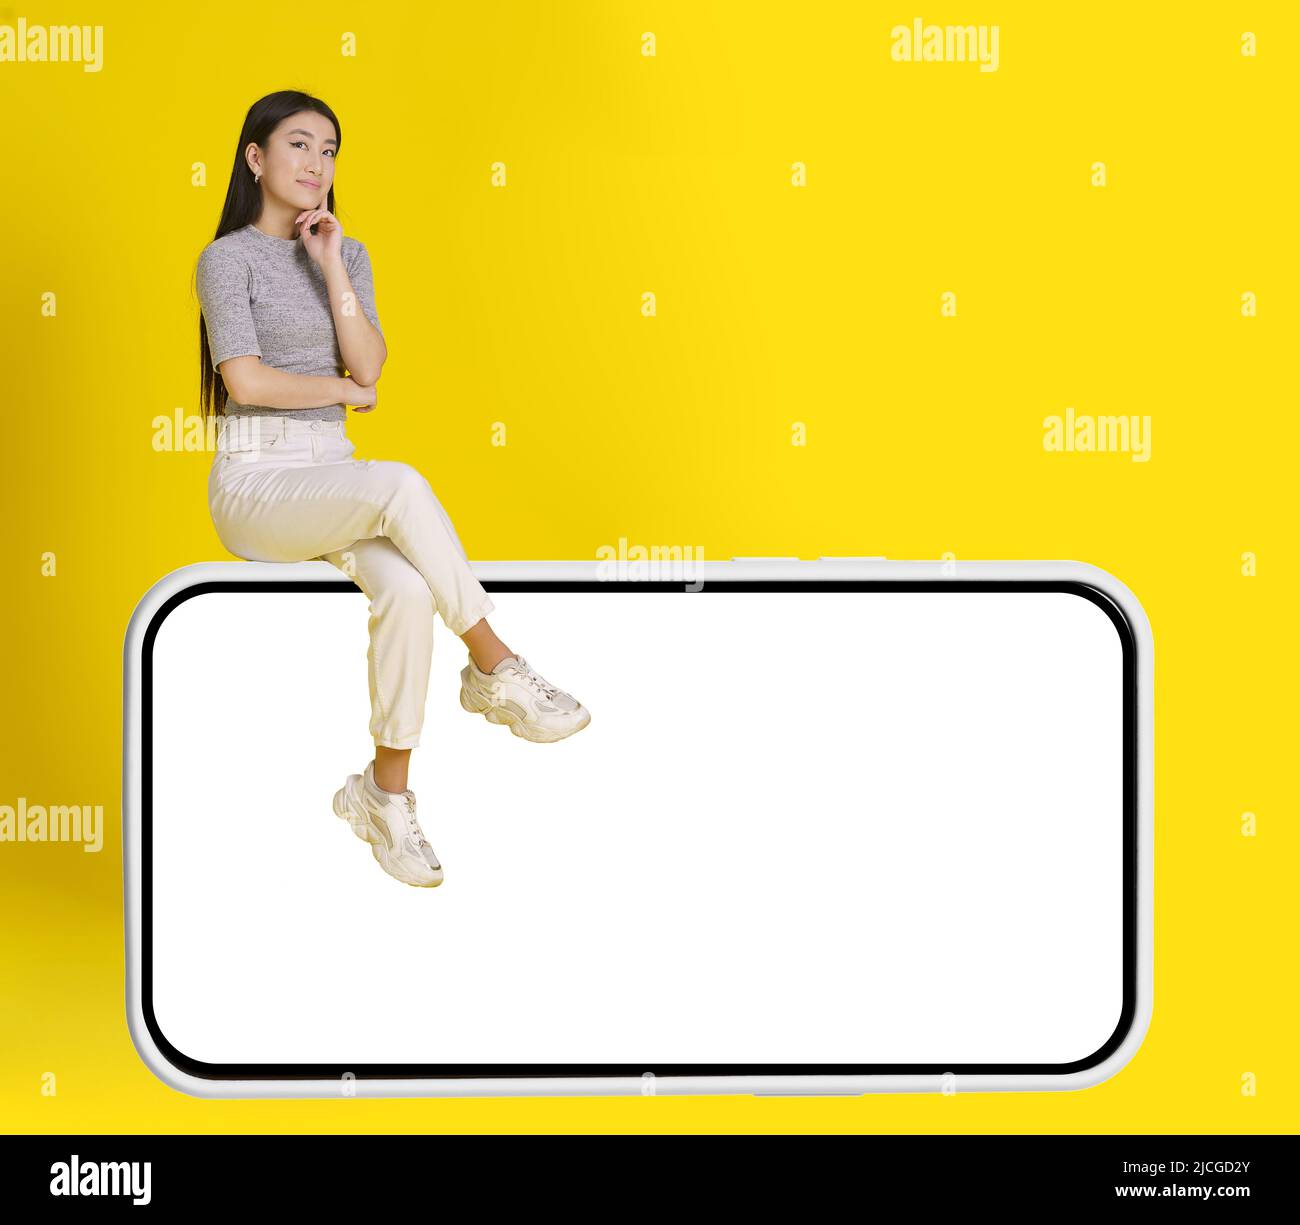 La ragazza asiatica pensierosa si siede su smartphone enorme con schermo bianco che indossa jeans bianco casual isolato su sfondo giallo. Simulazione del posizionamento dei prodotti. Pubblicità app mobile. Spazio di copia. Foto Stock